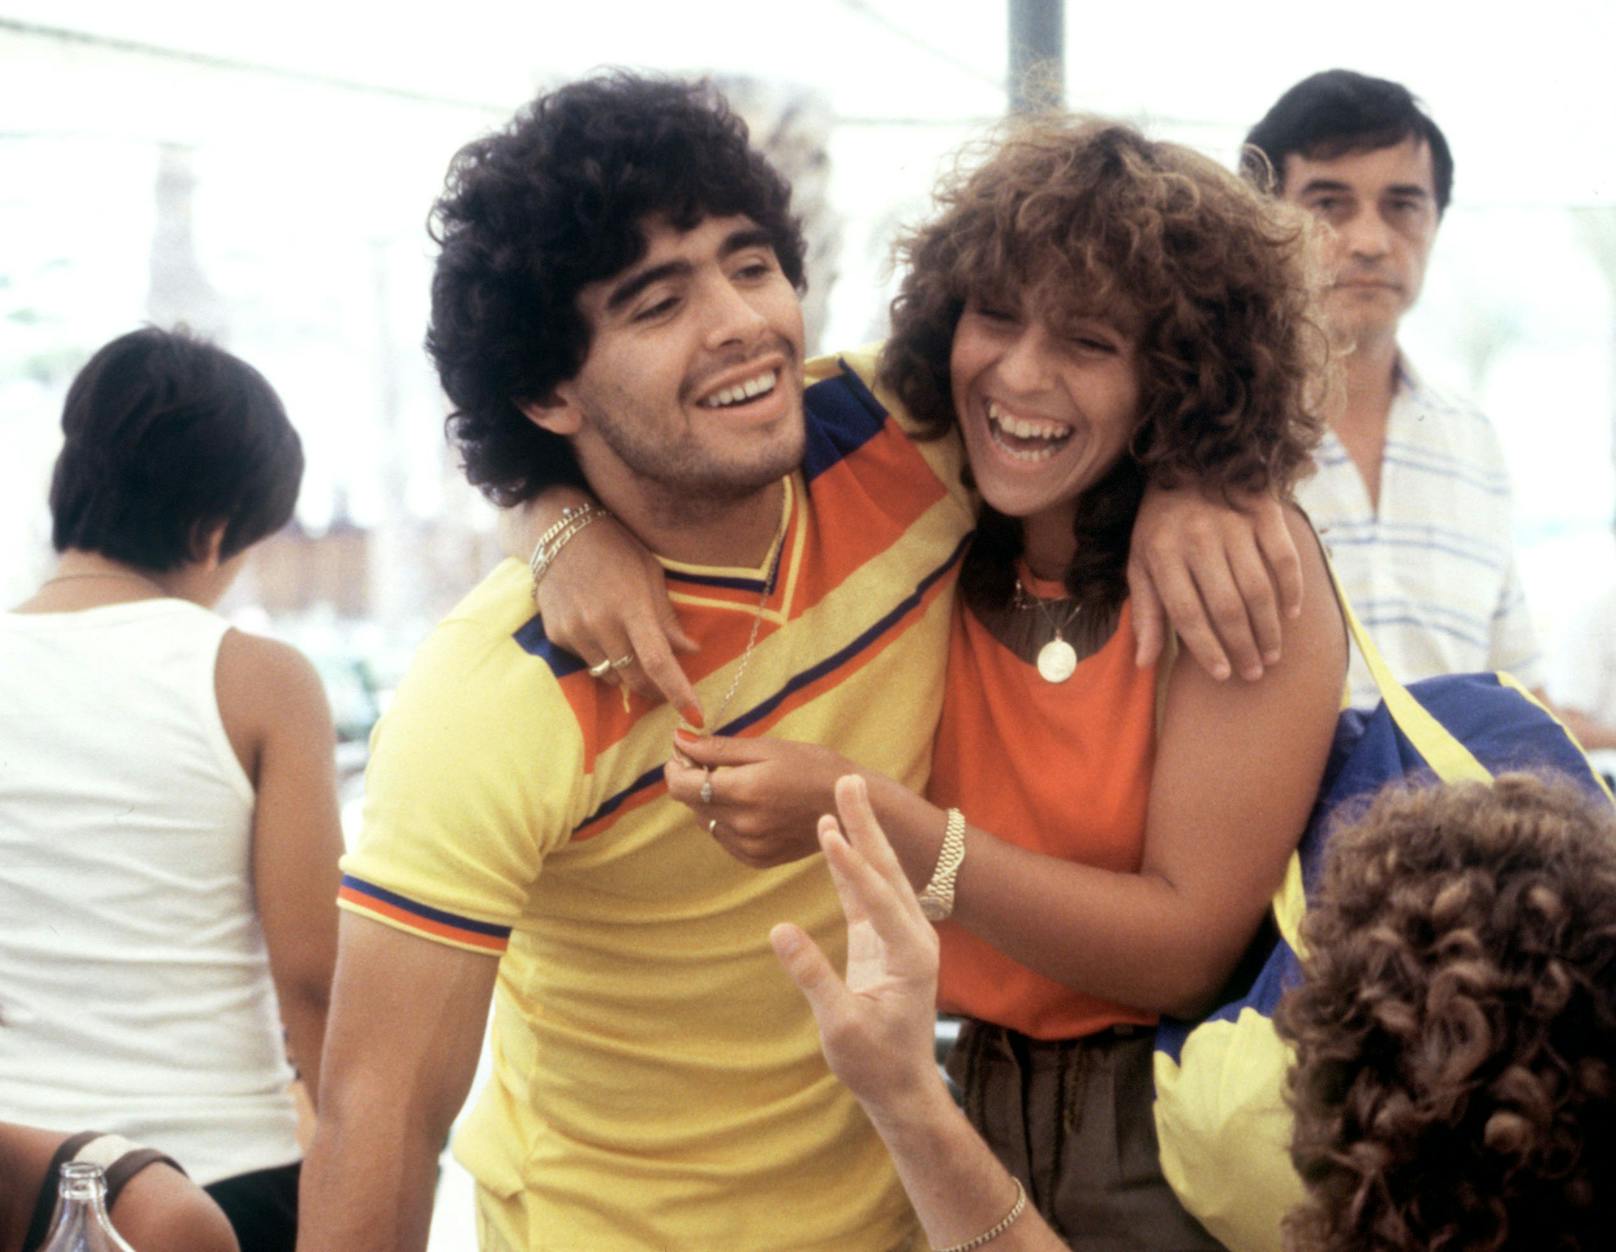 Diego Maradona schlendert am 19.06.1982 mit seiner Freundin Claudia Villafane durch Sevilla. Maradona genießt das trainingsfreie Wochenende bei der Fußball-Weltmeisterschaft in Spanien. 